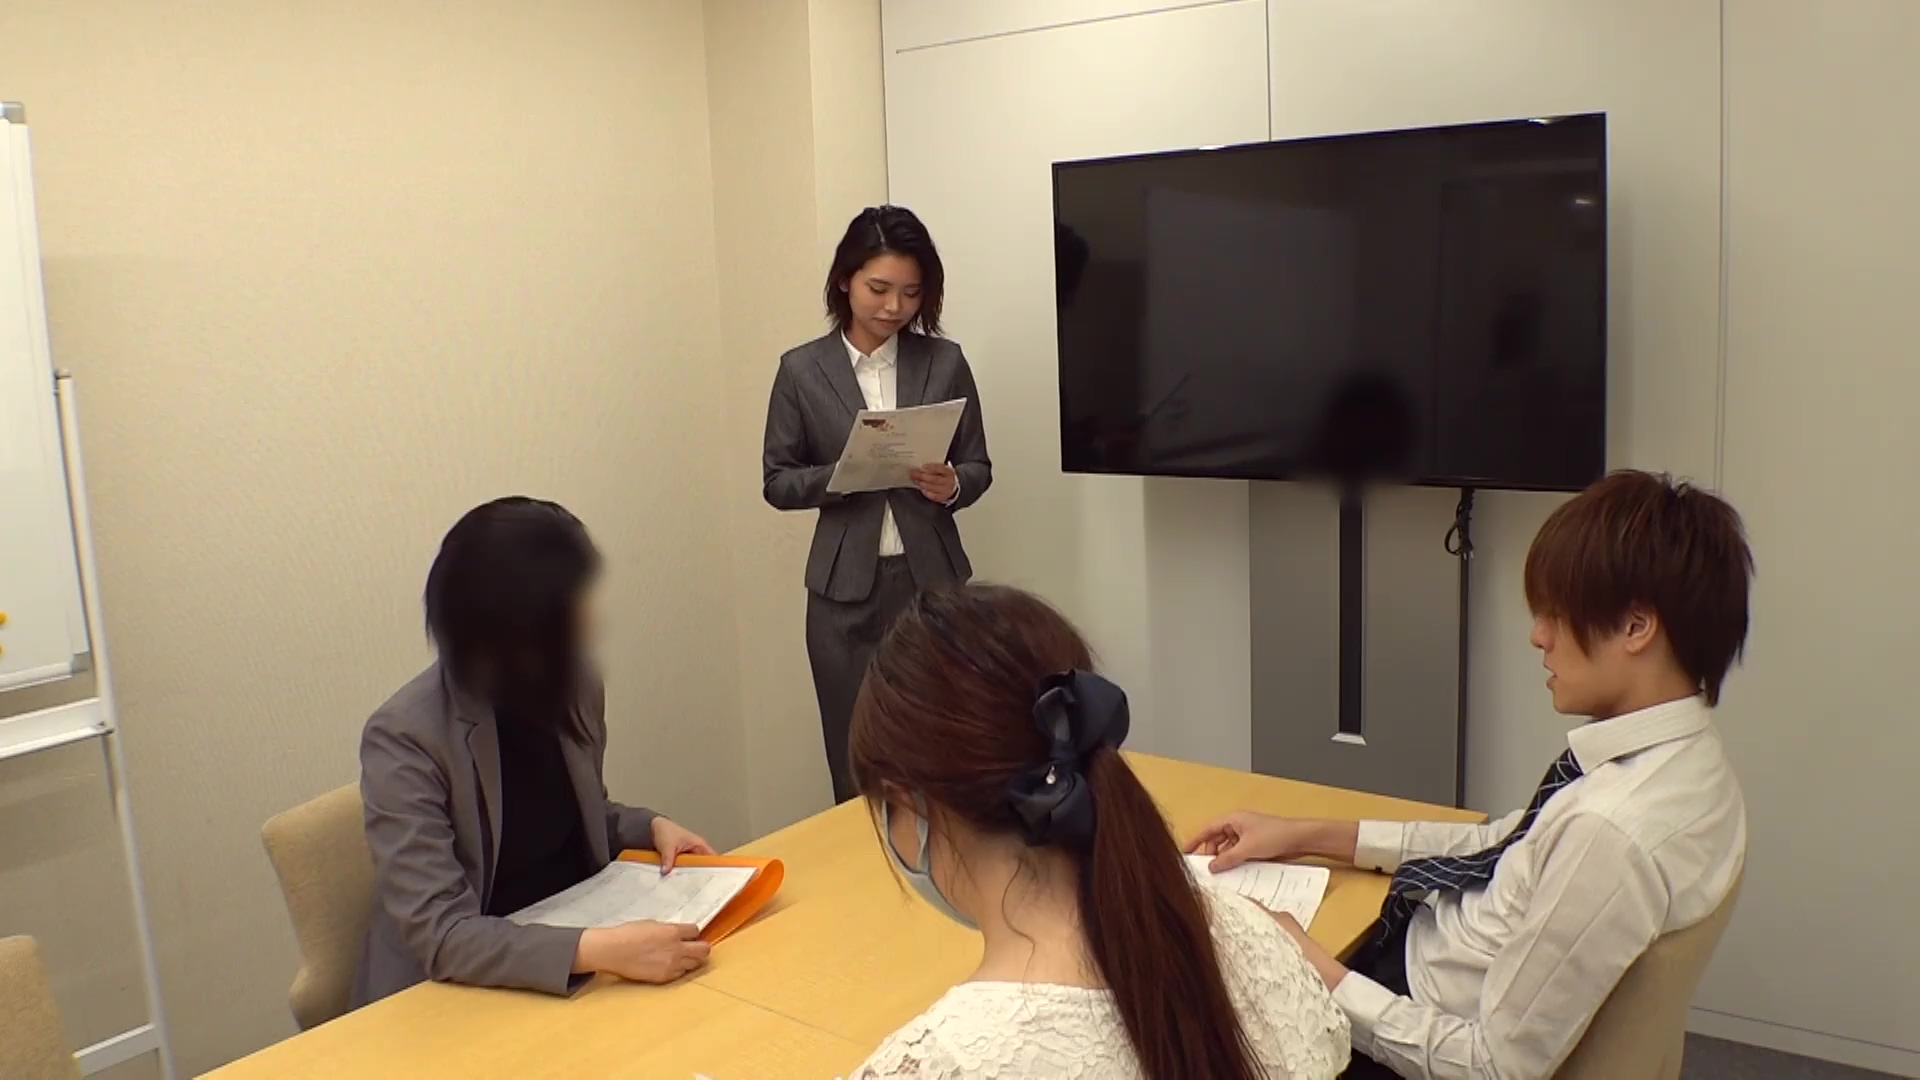 18-jähriger japanischer Angestellter wird vom Chef im Büro grob in haarige Muschi gefickt